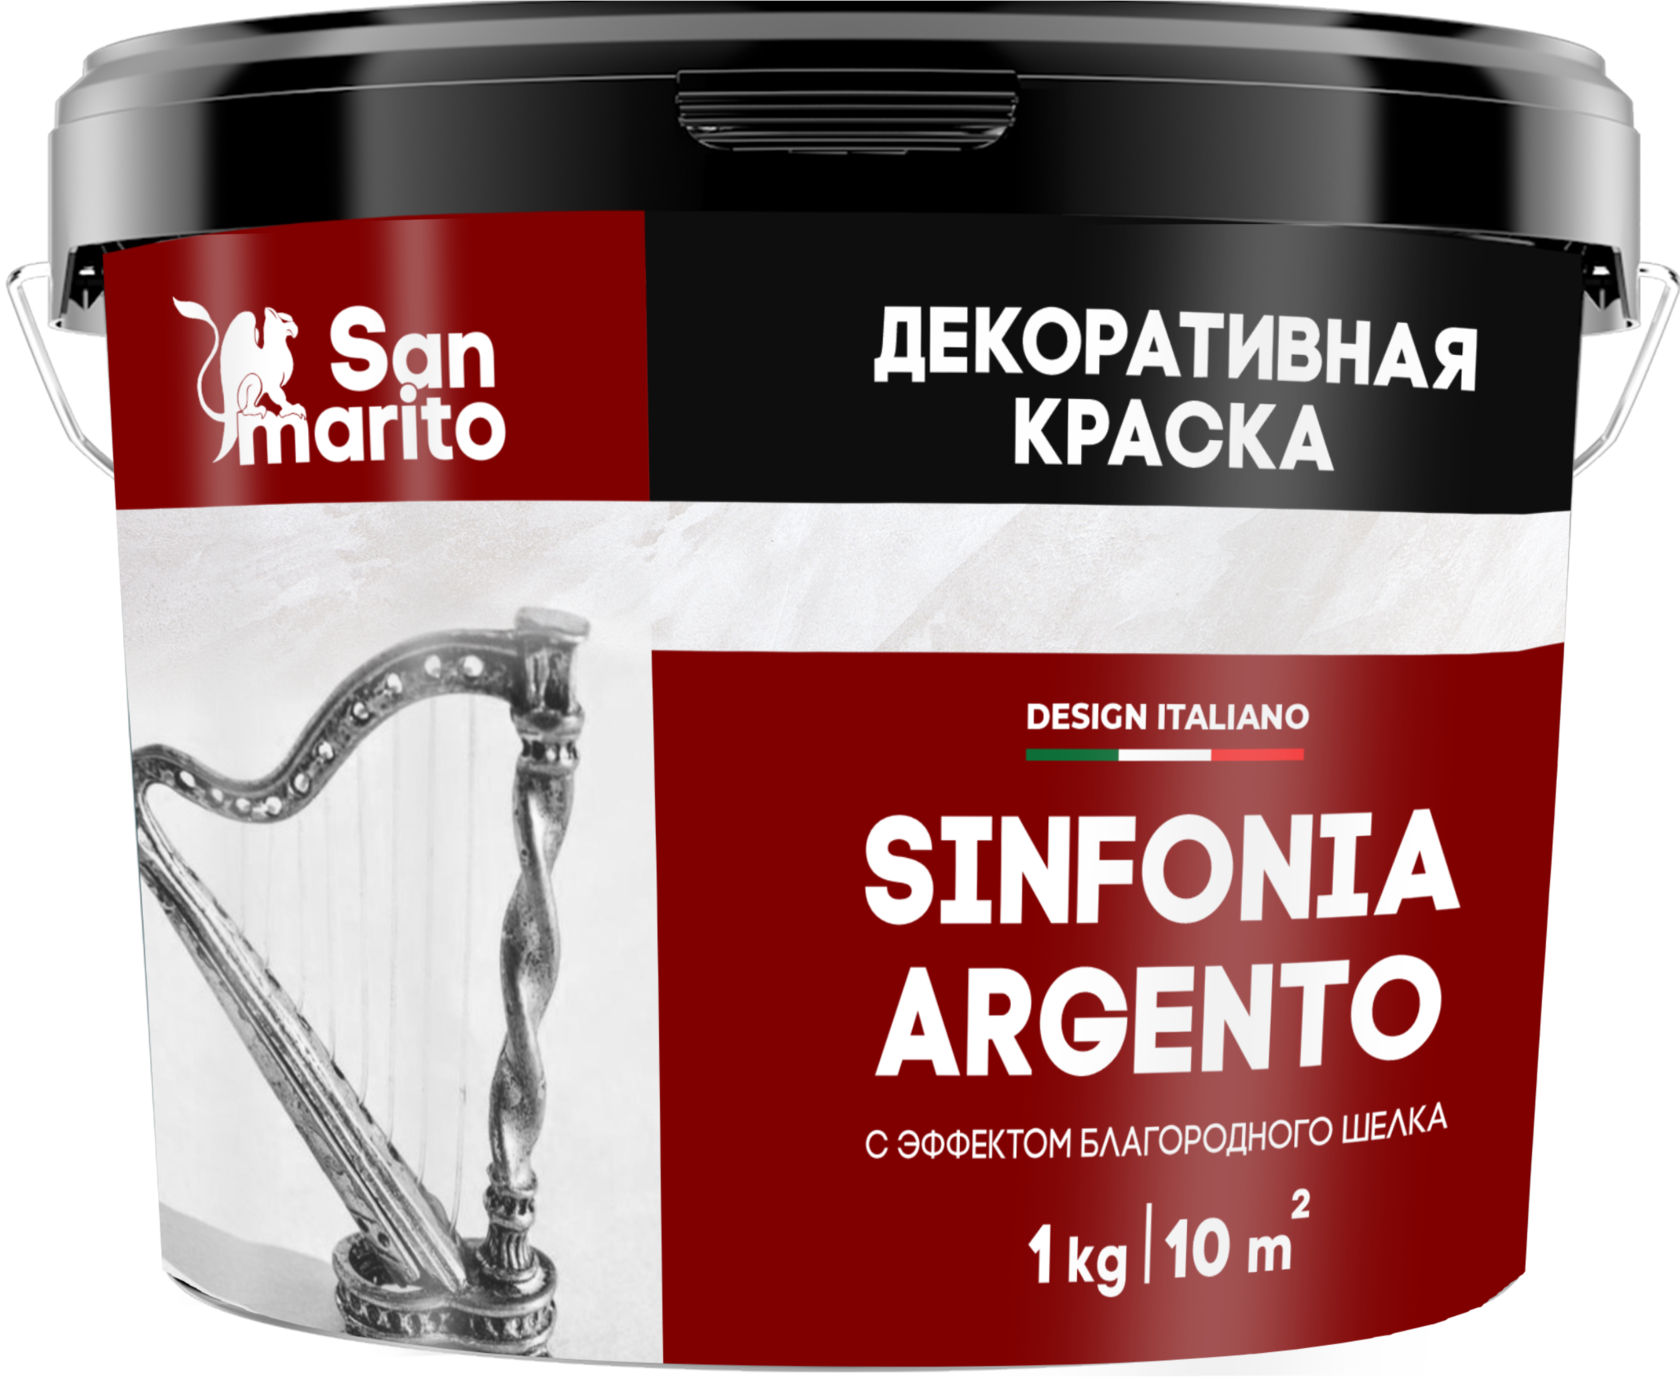 Краска декоративная с эффектом благородного шелка "San Marito Sinfonia Argento" 1 кг